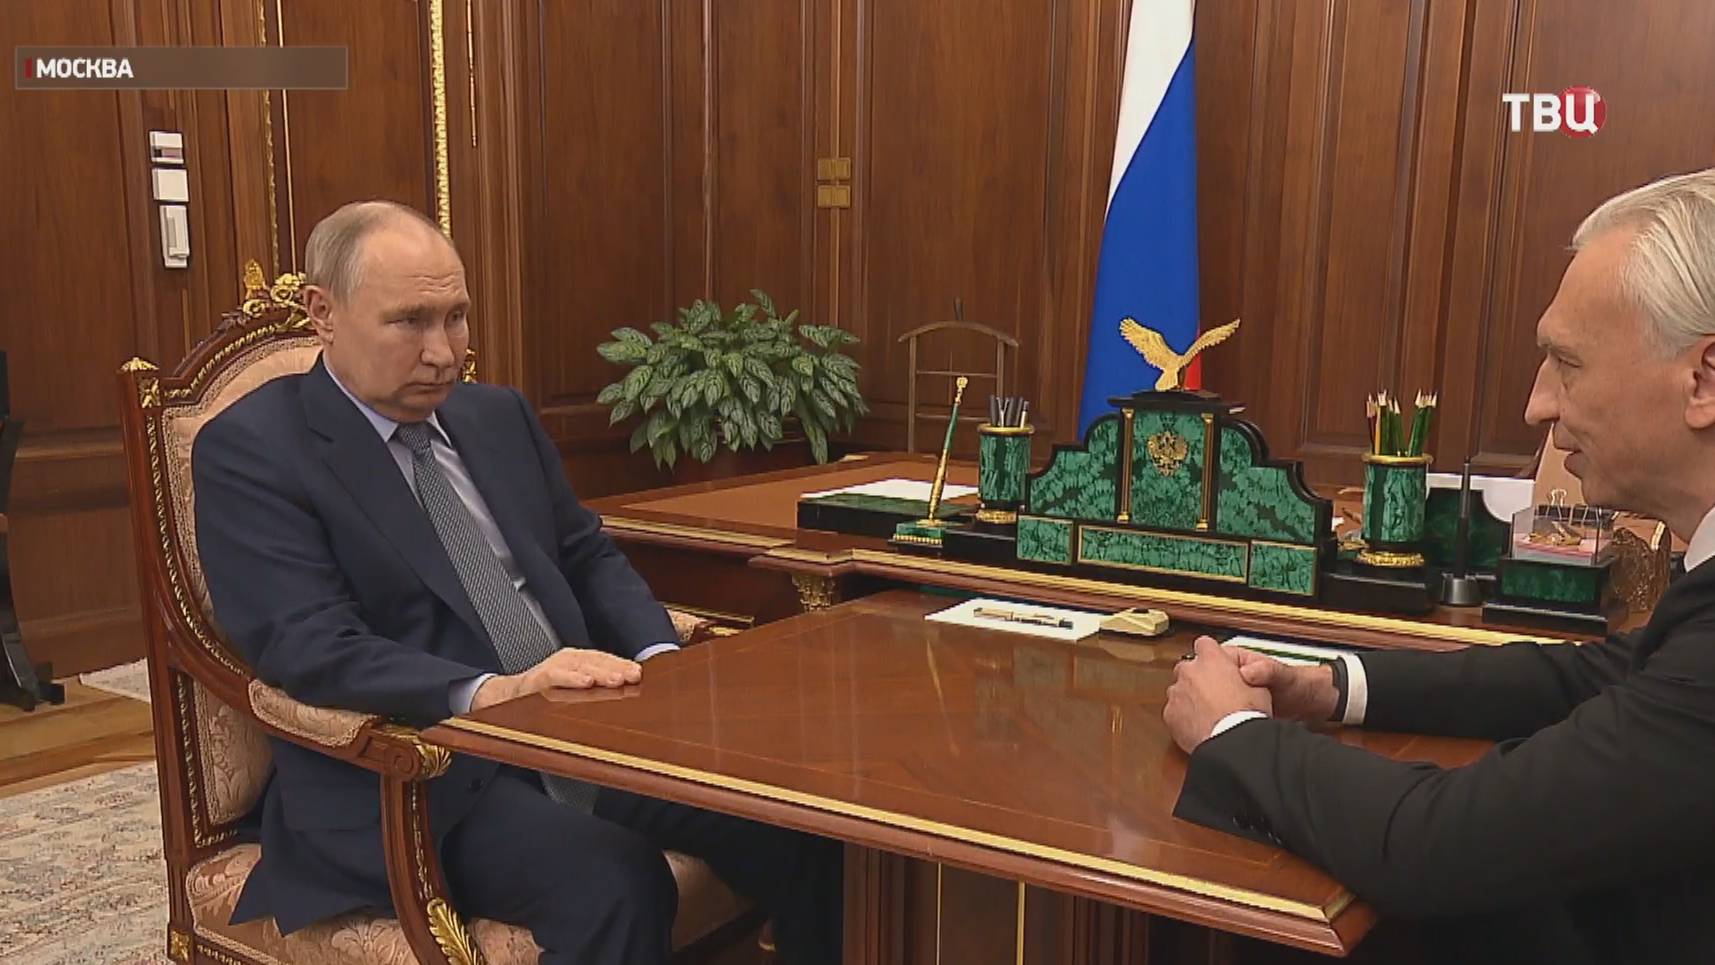 Путину доложили о достижениях "Газпром нефти" / События на ТВЦ